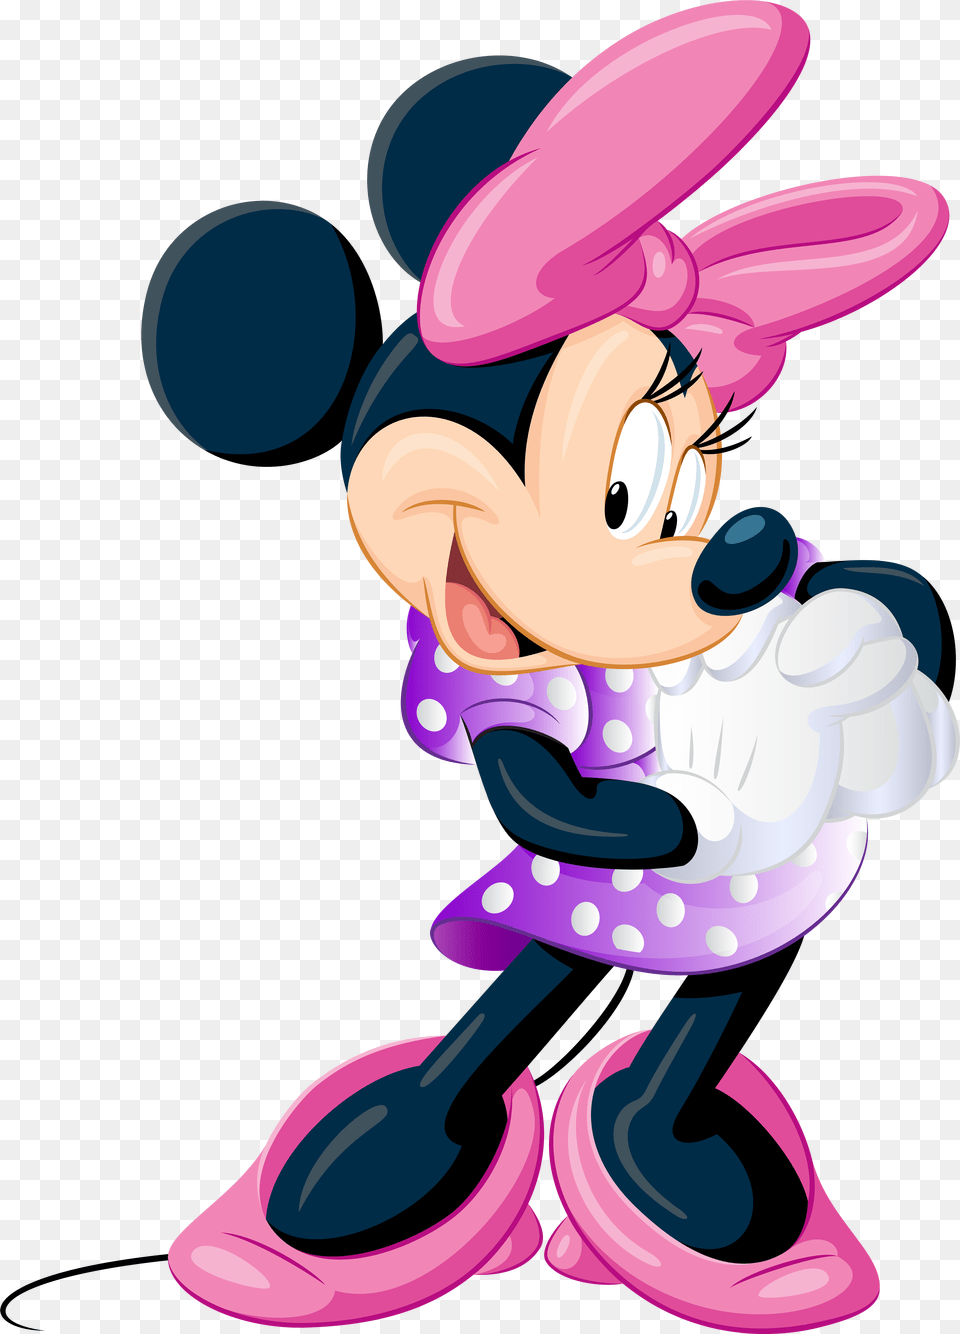 Minnie Mouse Clip Art Image Minnie Mouse Clipart, Purple, Cartoon, Book, Publication Free Transparent Png